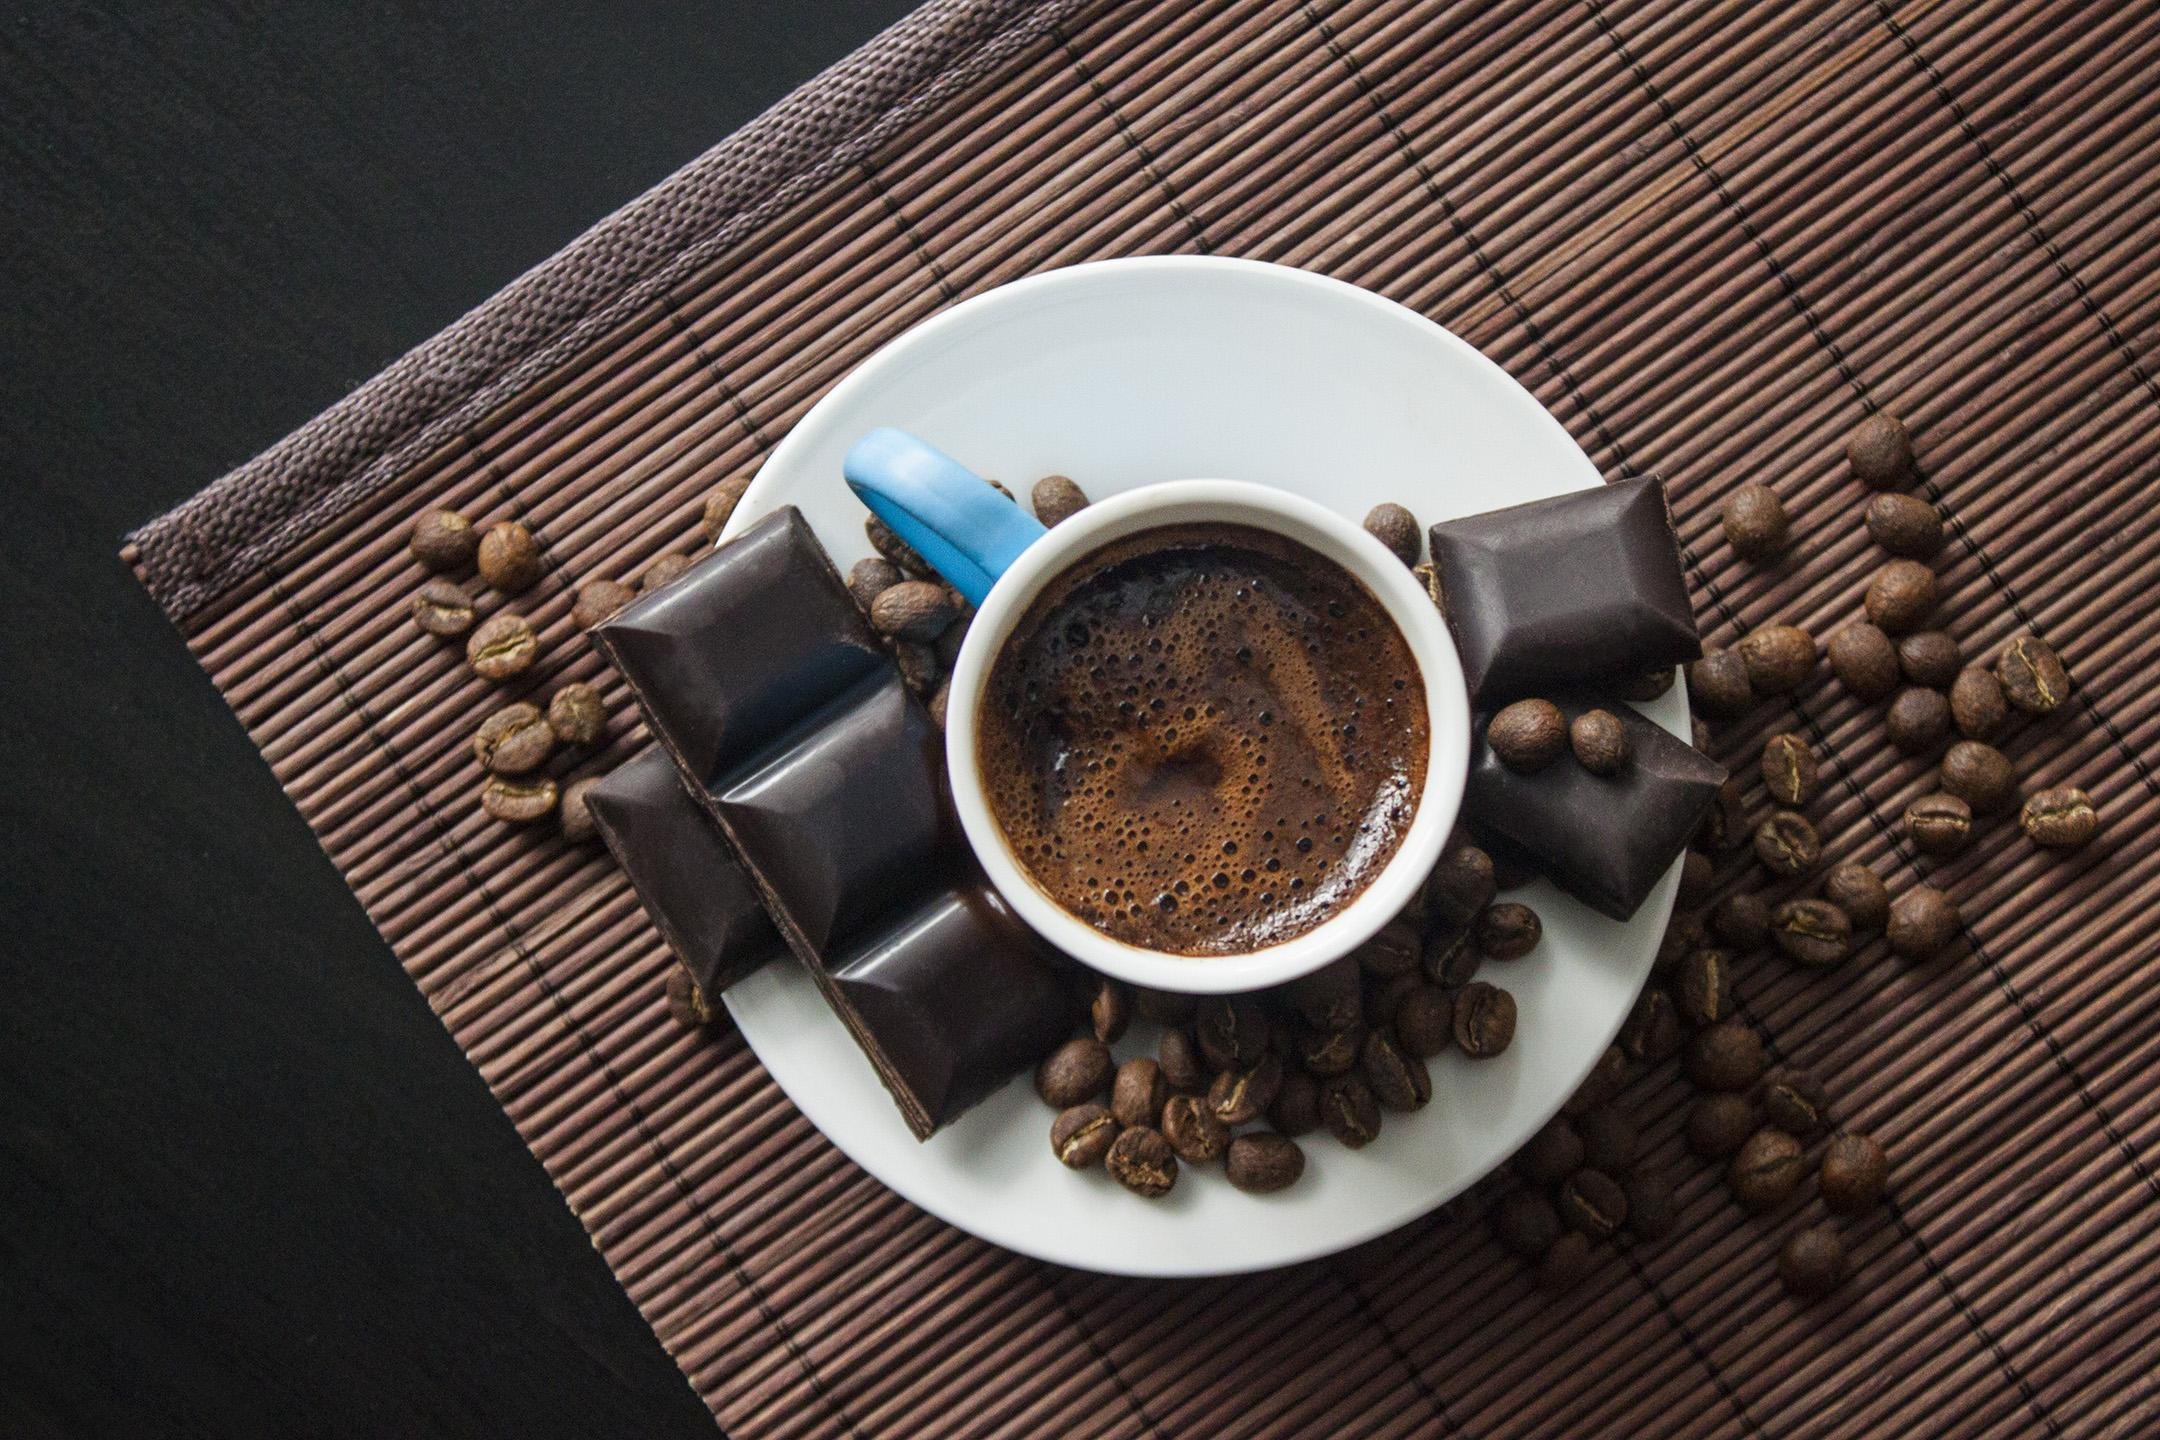 Фото с кофе. Karl kave. Кофе и шоколад. Кофе с шоколадкой. Кофе и Горький шоколад.